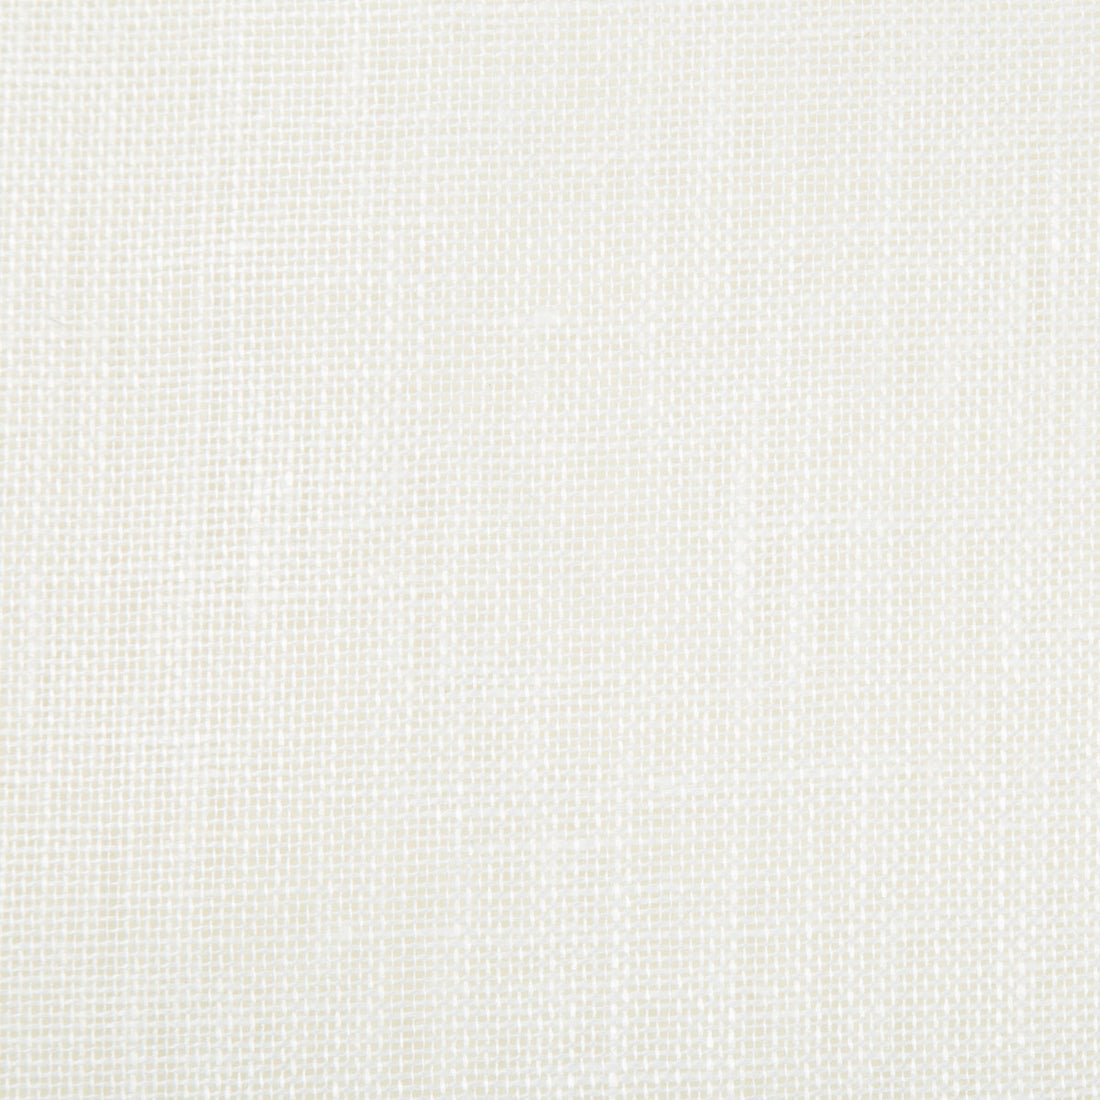 Kravet Basics fabric in 9935-101 color - pattern 9935.101.0 - by Kravet Basics